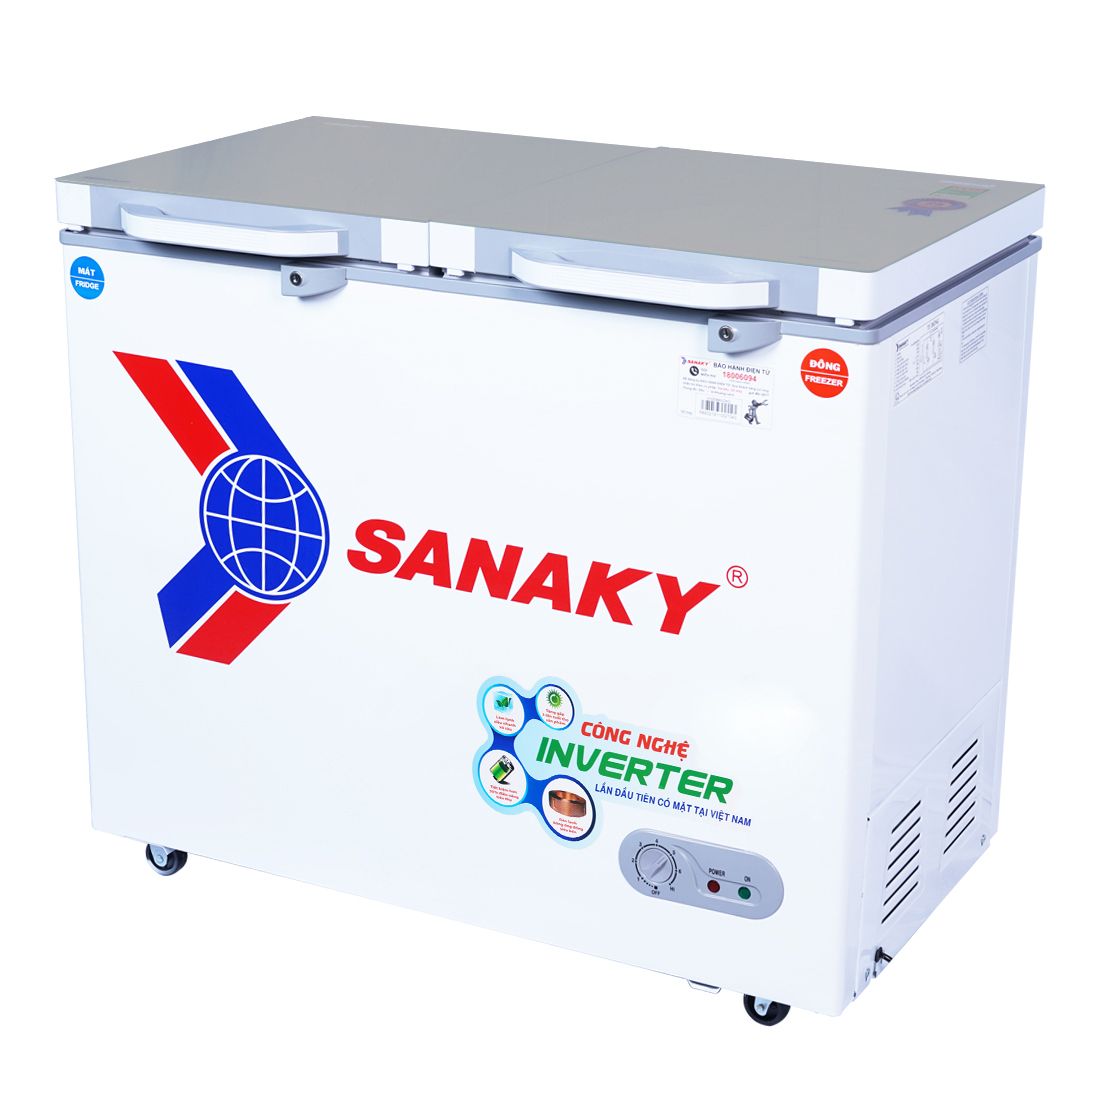 Tủ Đông Sanaky VH-2599W4K